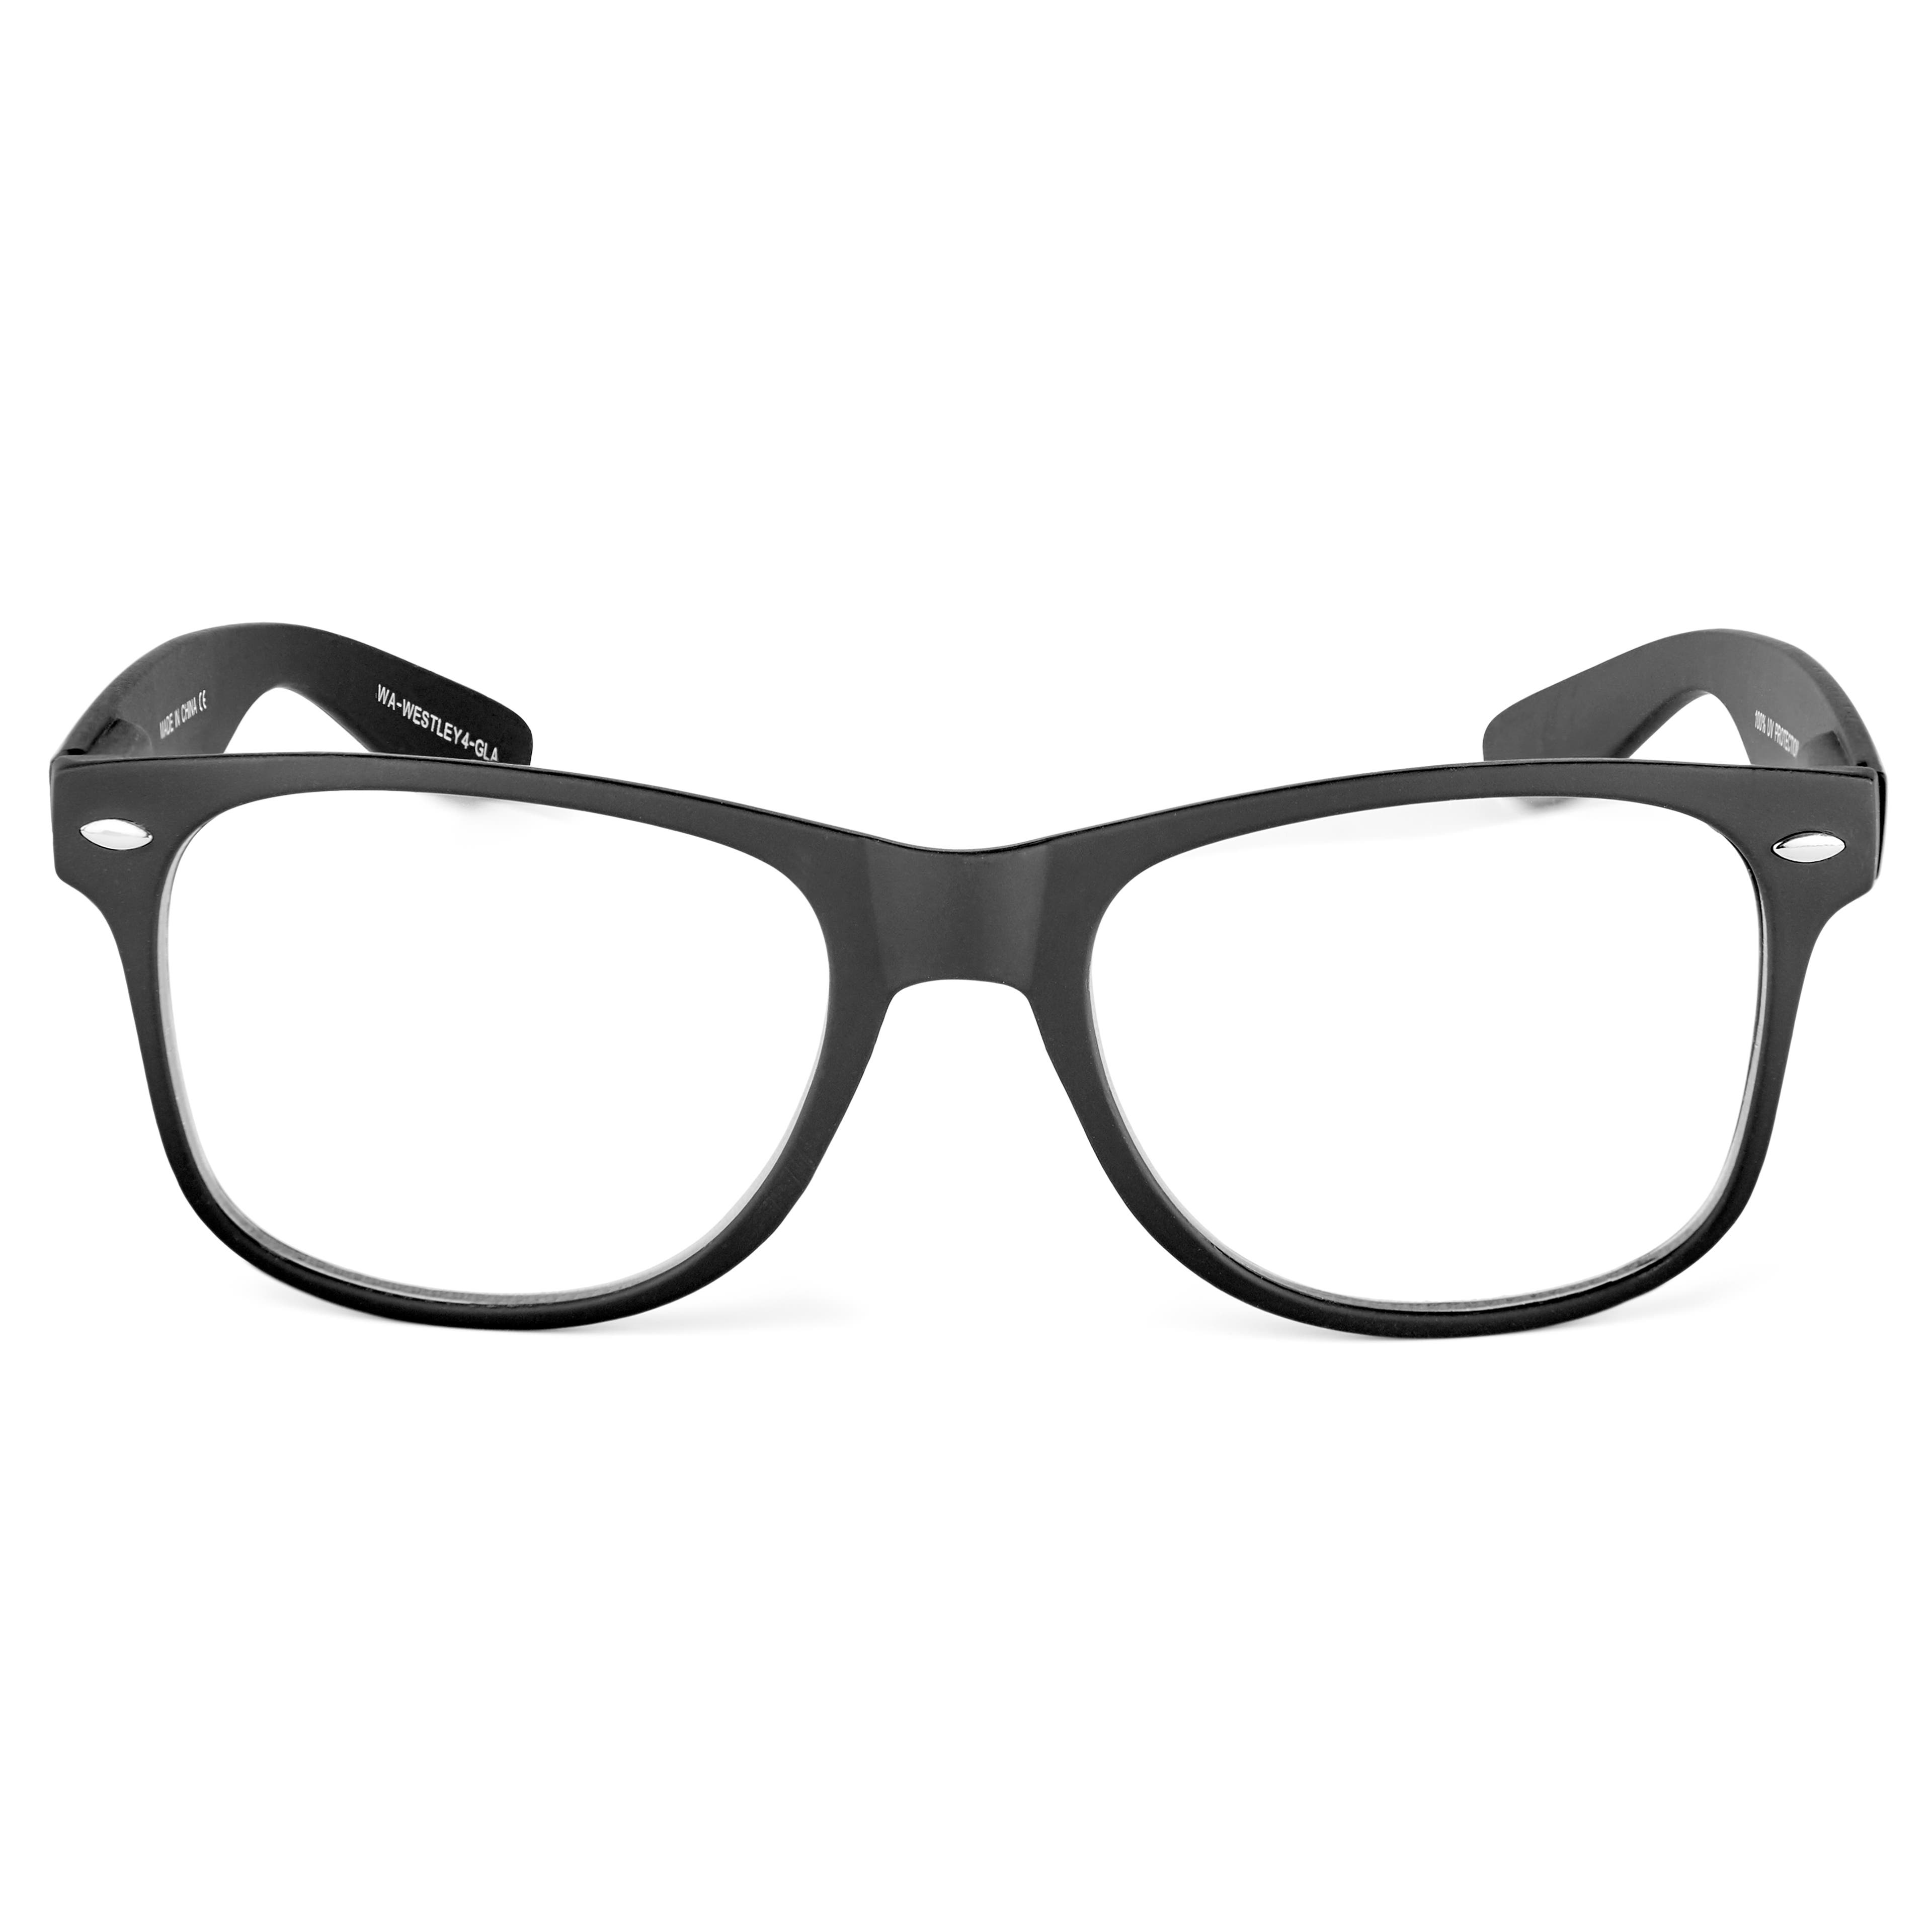 Brýle Westley s čirými čočkami